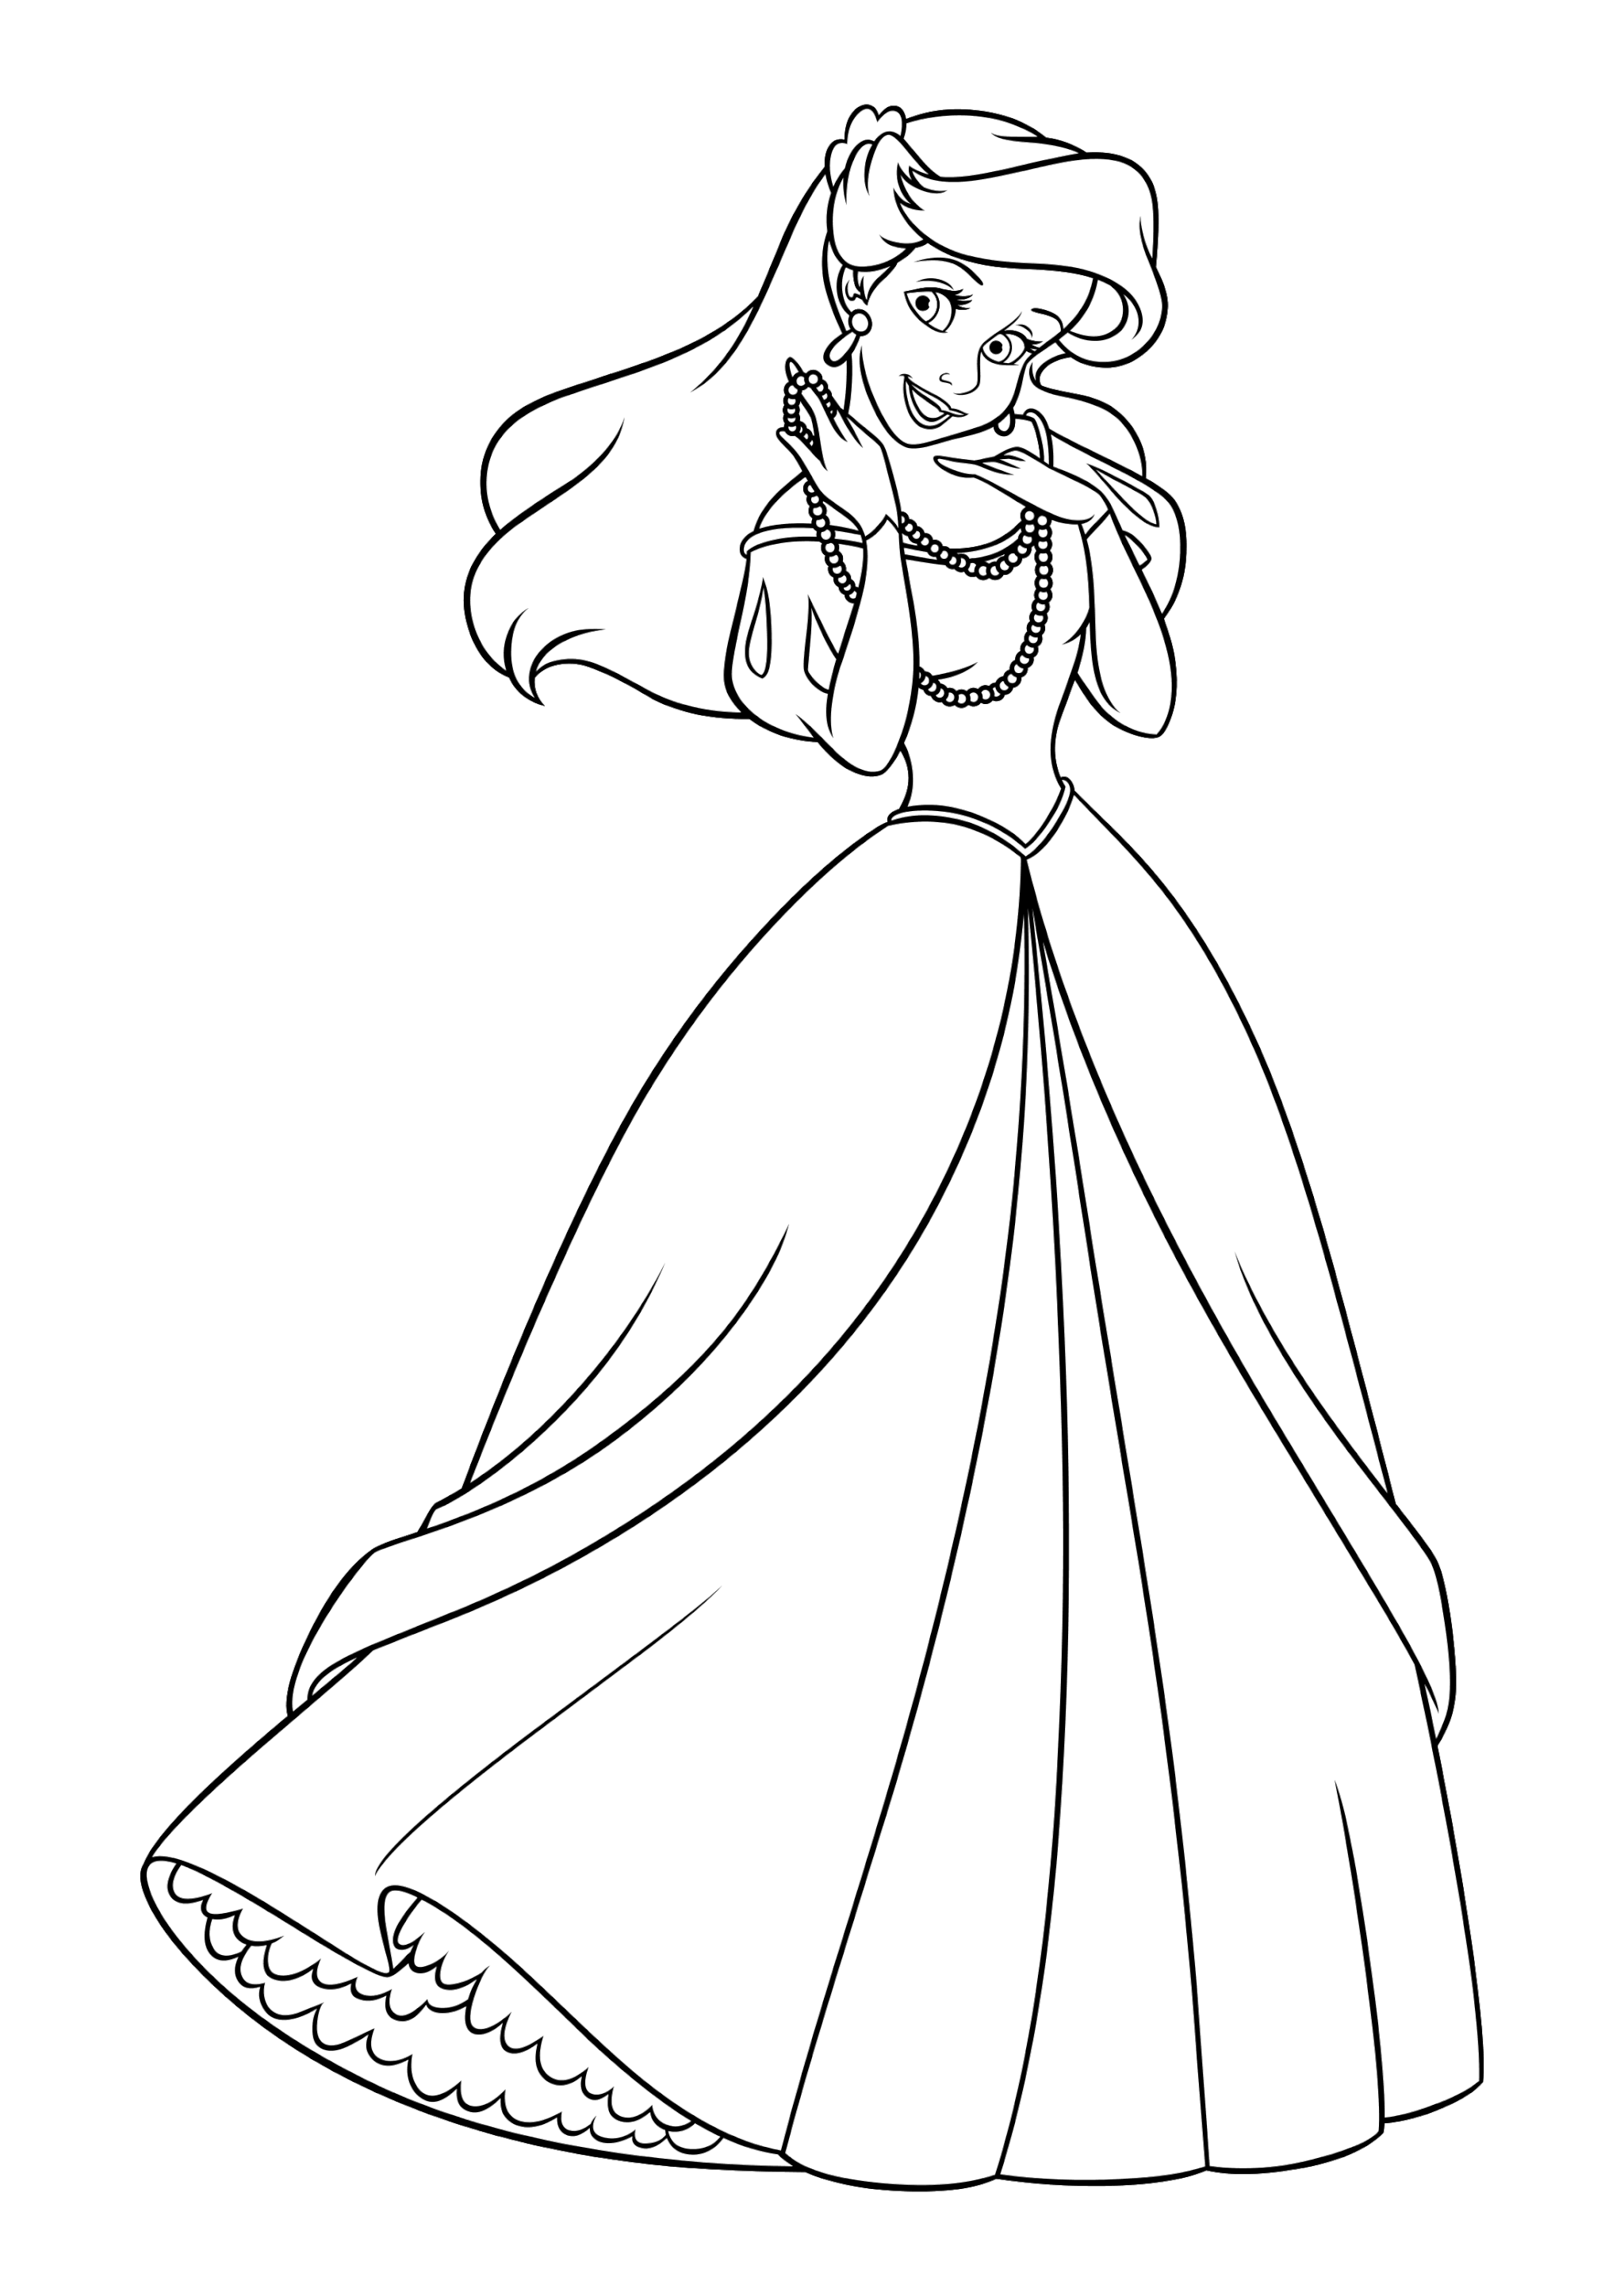 Раскраска Принцесса Ариэль в бальном платье